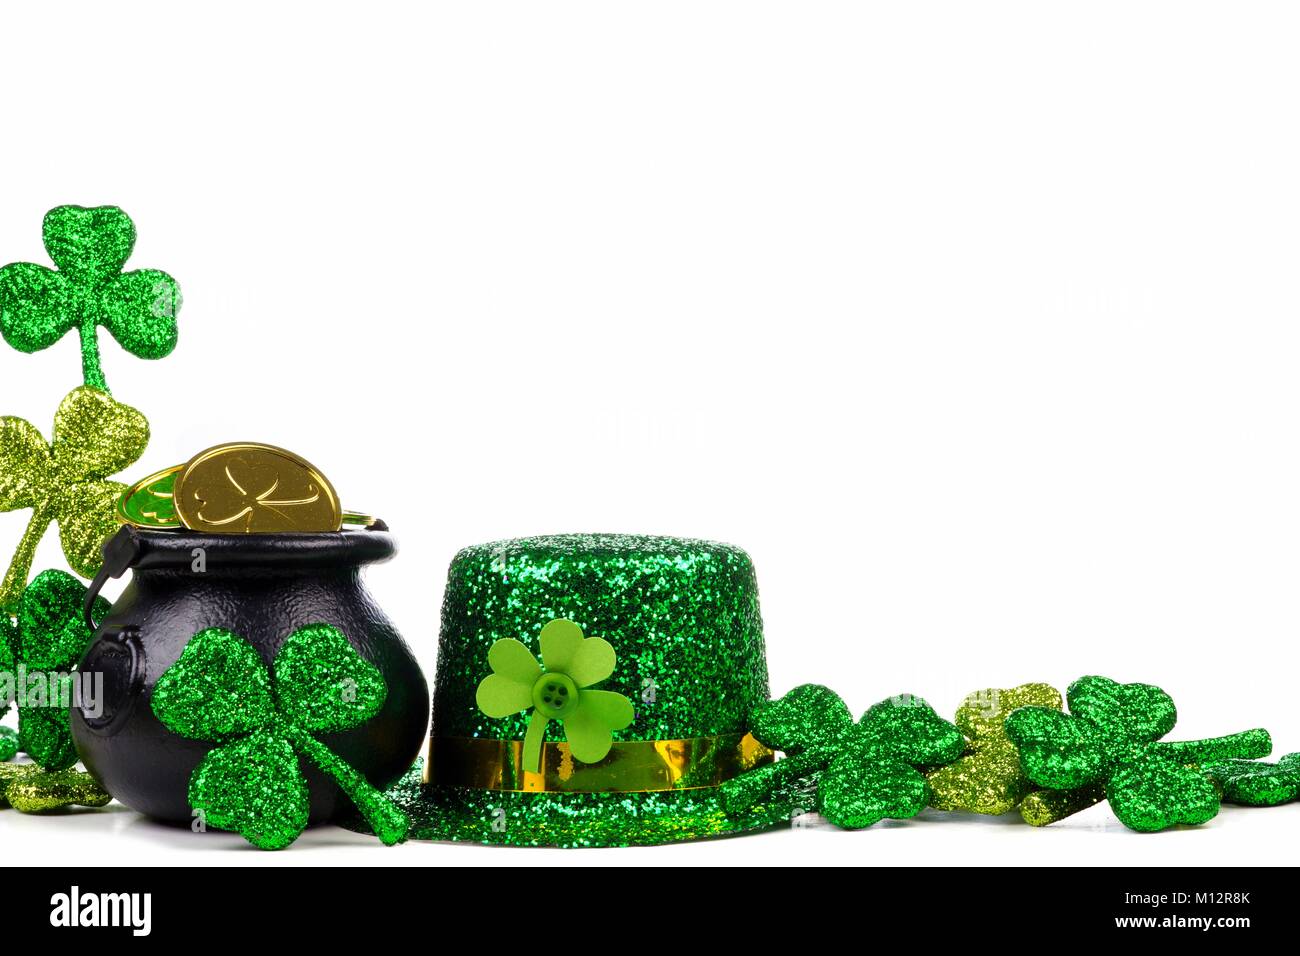 St Patricks Day Pot of Gold, Shamrocks und Leprechaun hat. Ecke Grenze über einen weißen Hintergrund. Stockfoto